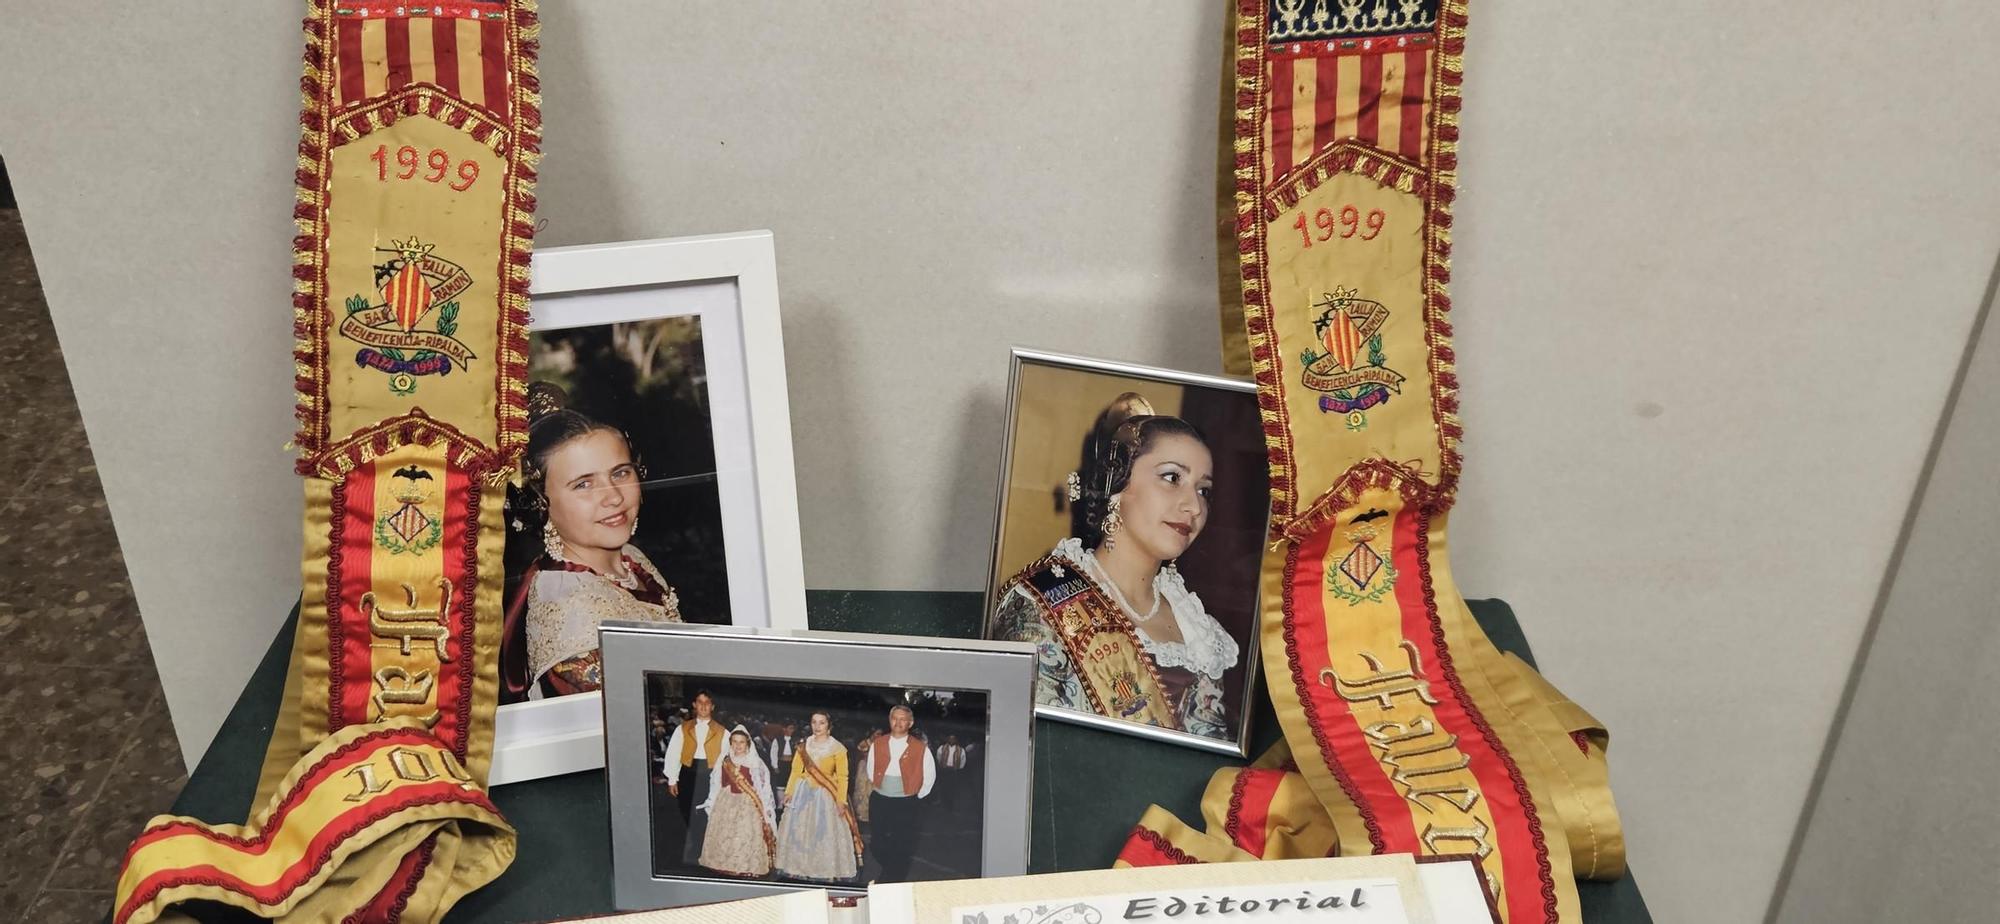 Ripalda-Beneficència exhibe sus 150 años de historia en imágenes